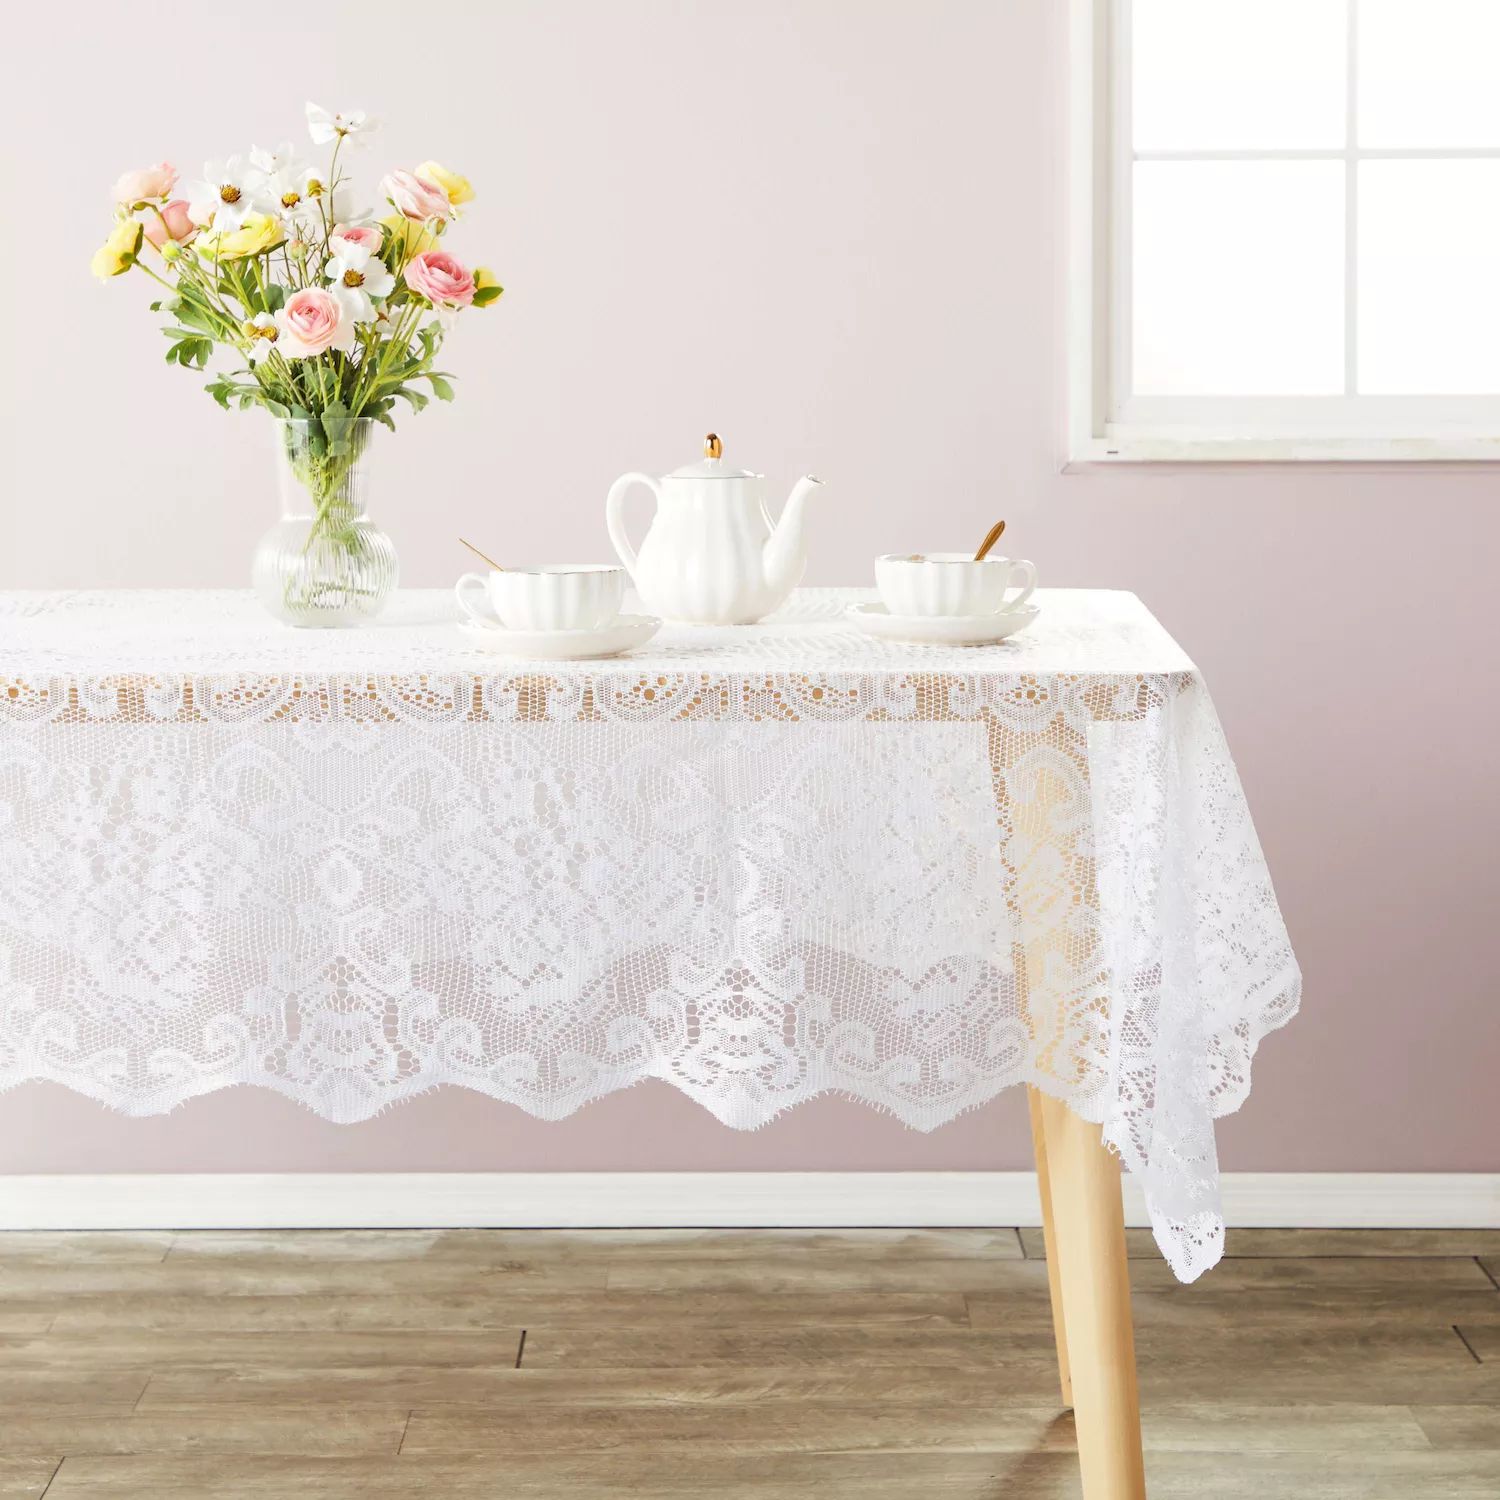 Белая кружевная скатерть для прямоугольных столов, винтажный стиль для официального ужина, званых обедов, свадеб, детского душа (60 x 97 дюймов) printio скатерть квадратная кружевная